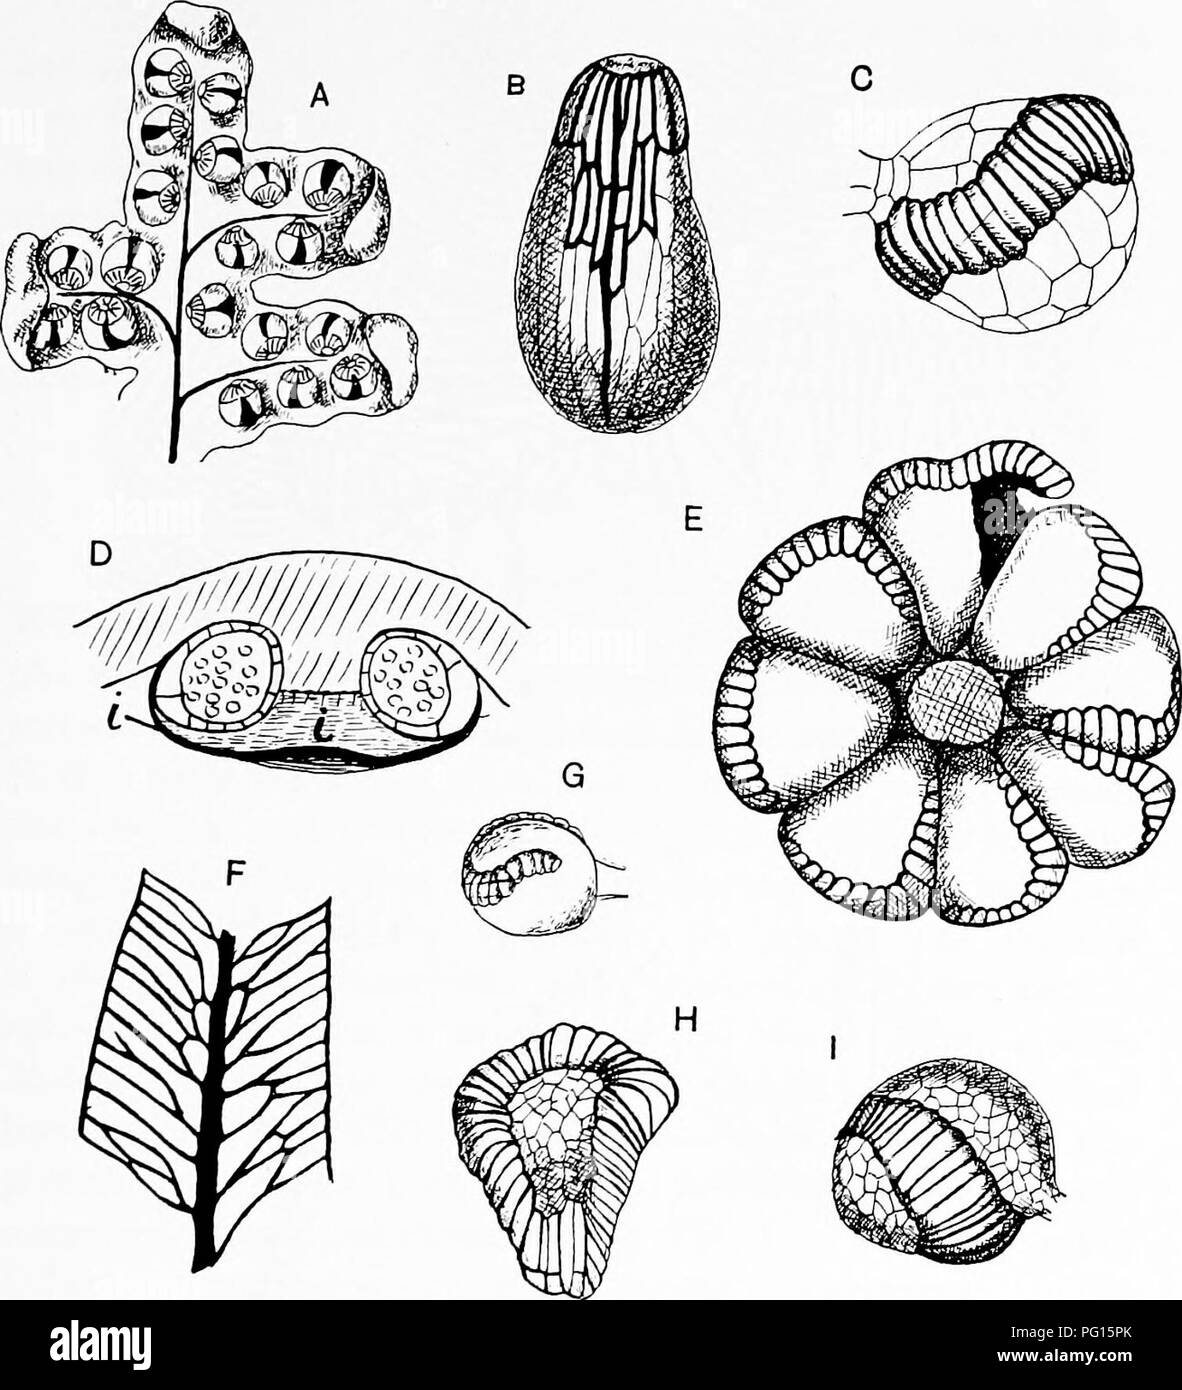 . Fossile Pflanzen: für Studenten der Botanik und Geologie. Paläobotanik. xx] GLEICHENIACEAE 289 Halbrund in Form (Abb. 226, C), in anderen (Kap. Mertensia") sind die Segmente linear (Abb. 226, D), und in vielen Arten, die Wedel sind durch die regelmäßigen dichotome Verzweigung aus. Fio. 224. A. Aneimia flexuosa. B. A. Phyllitidis. C. Hymeiwphyllum dilatatum. D E, F, G. Matonia Larix spp.; Ich, indusium. H. Thyrsopteris elegans. I. Gleichenia circinata. (A, B, nach Prantl; C, G, H, I, nach Bower.) 1 Underwood (07), S. 243, hat Bernhardi der Gattung Dicranopteria anstelle von Mertensia verabschiedet auf der Stockfoto